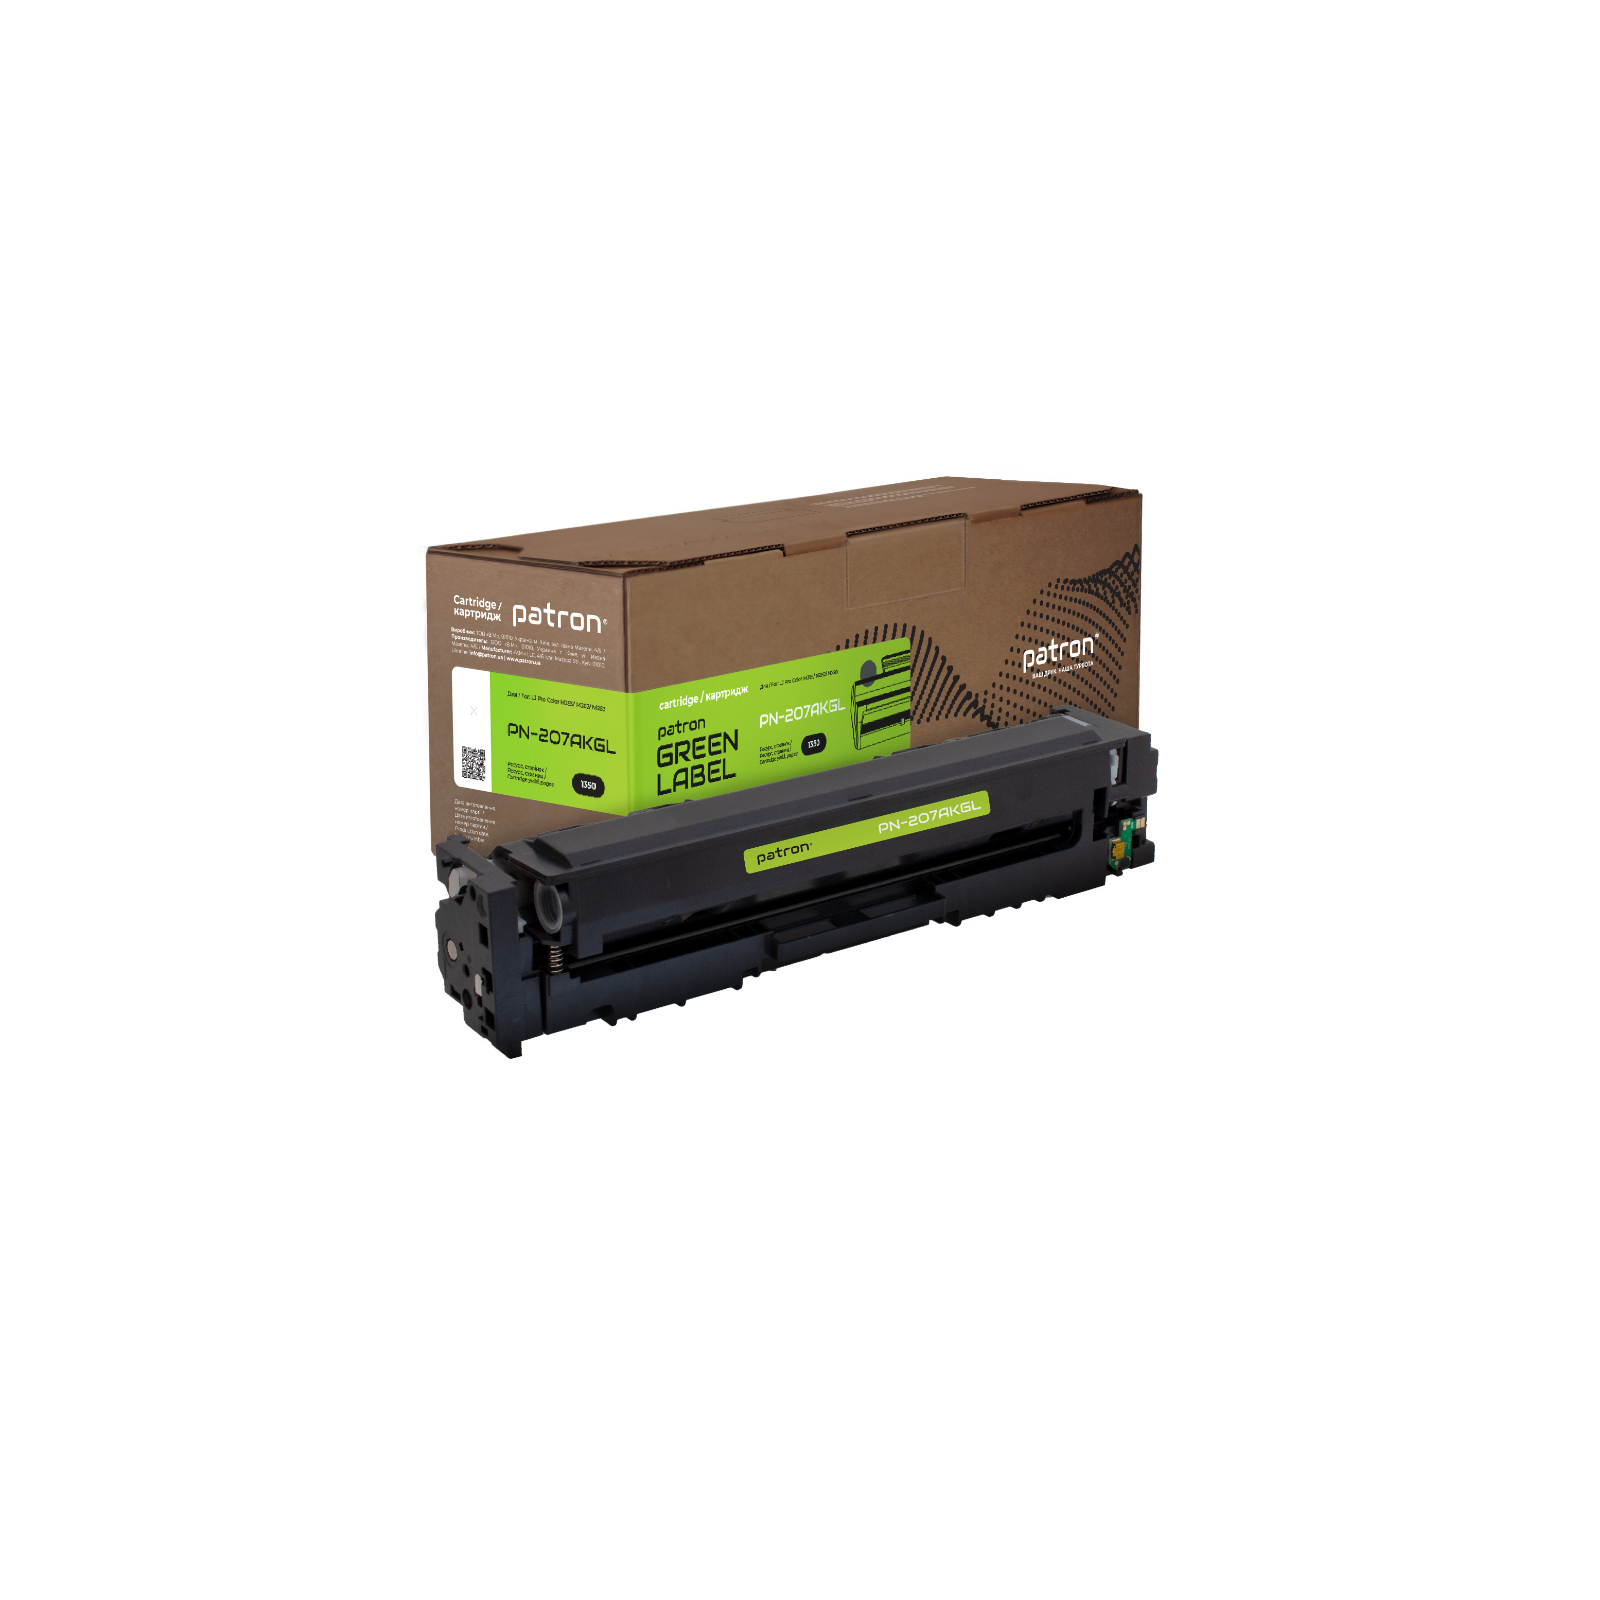 Картридж Patron HP 207A (W2210A) Green Label, black (PN-207AKGL)